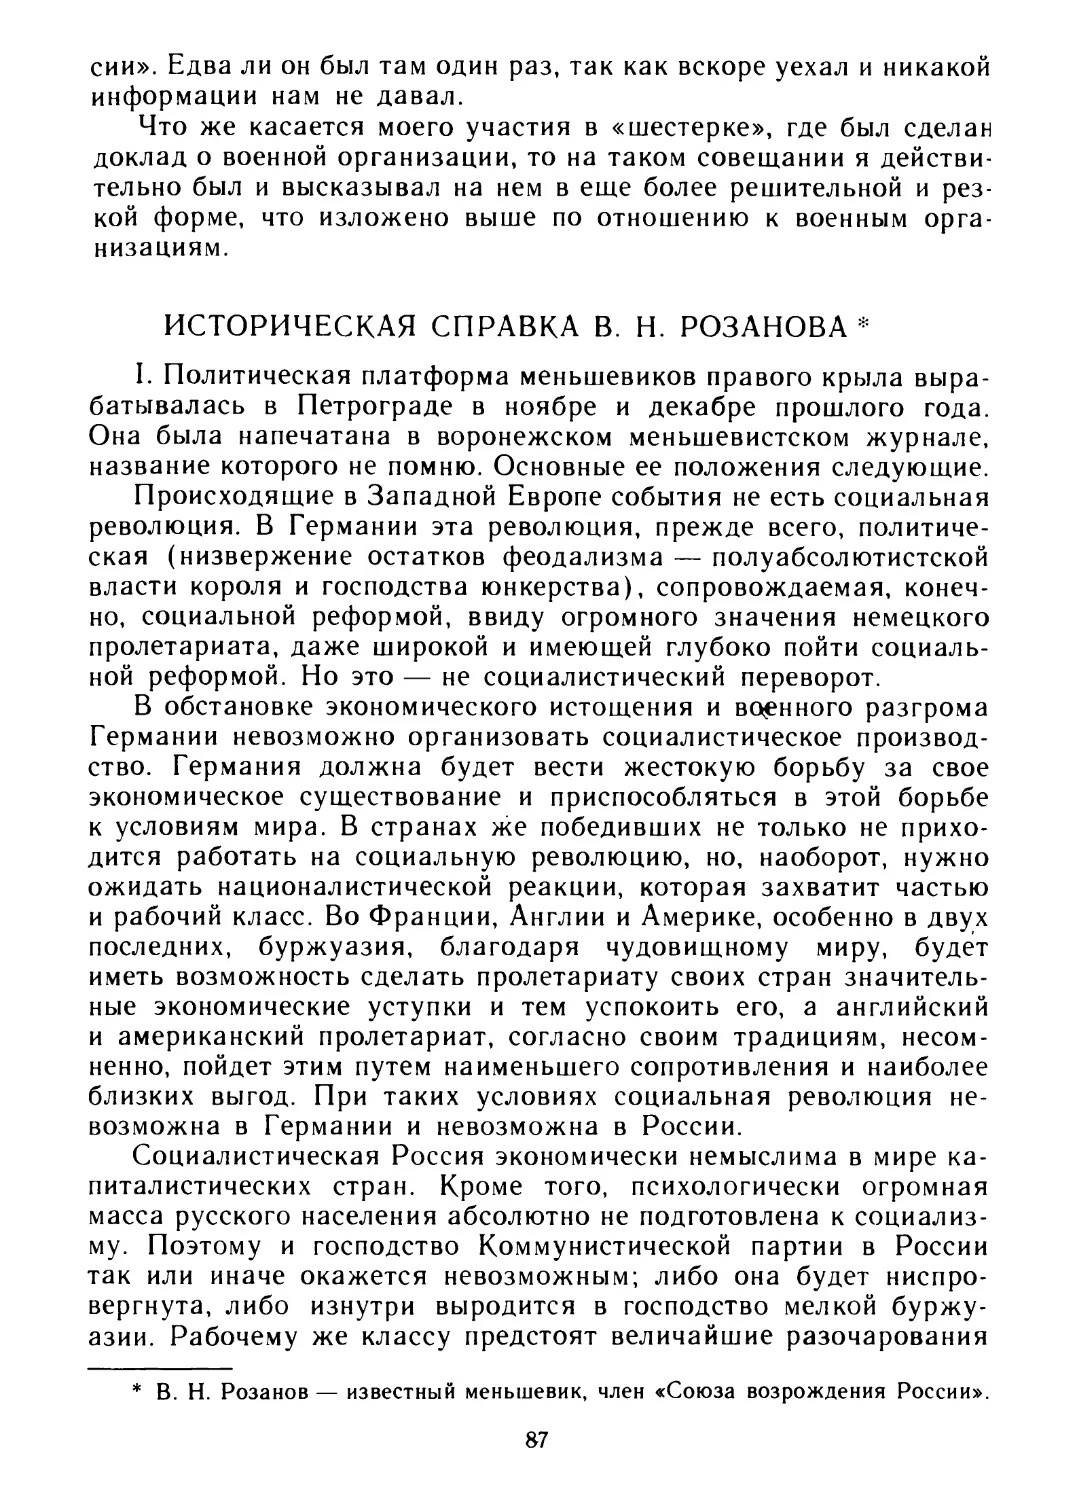 Историческая справка В. Н. Розанова